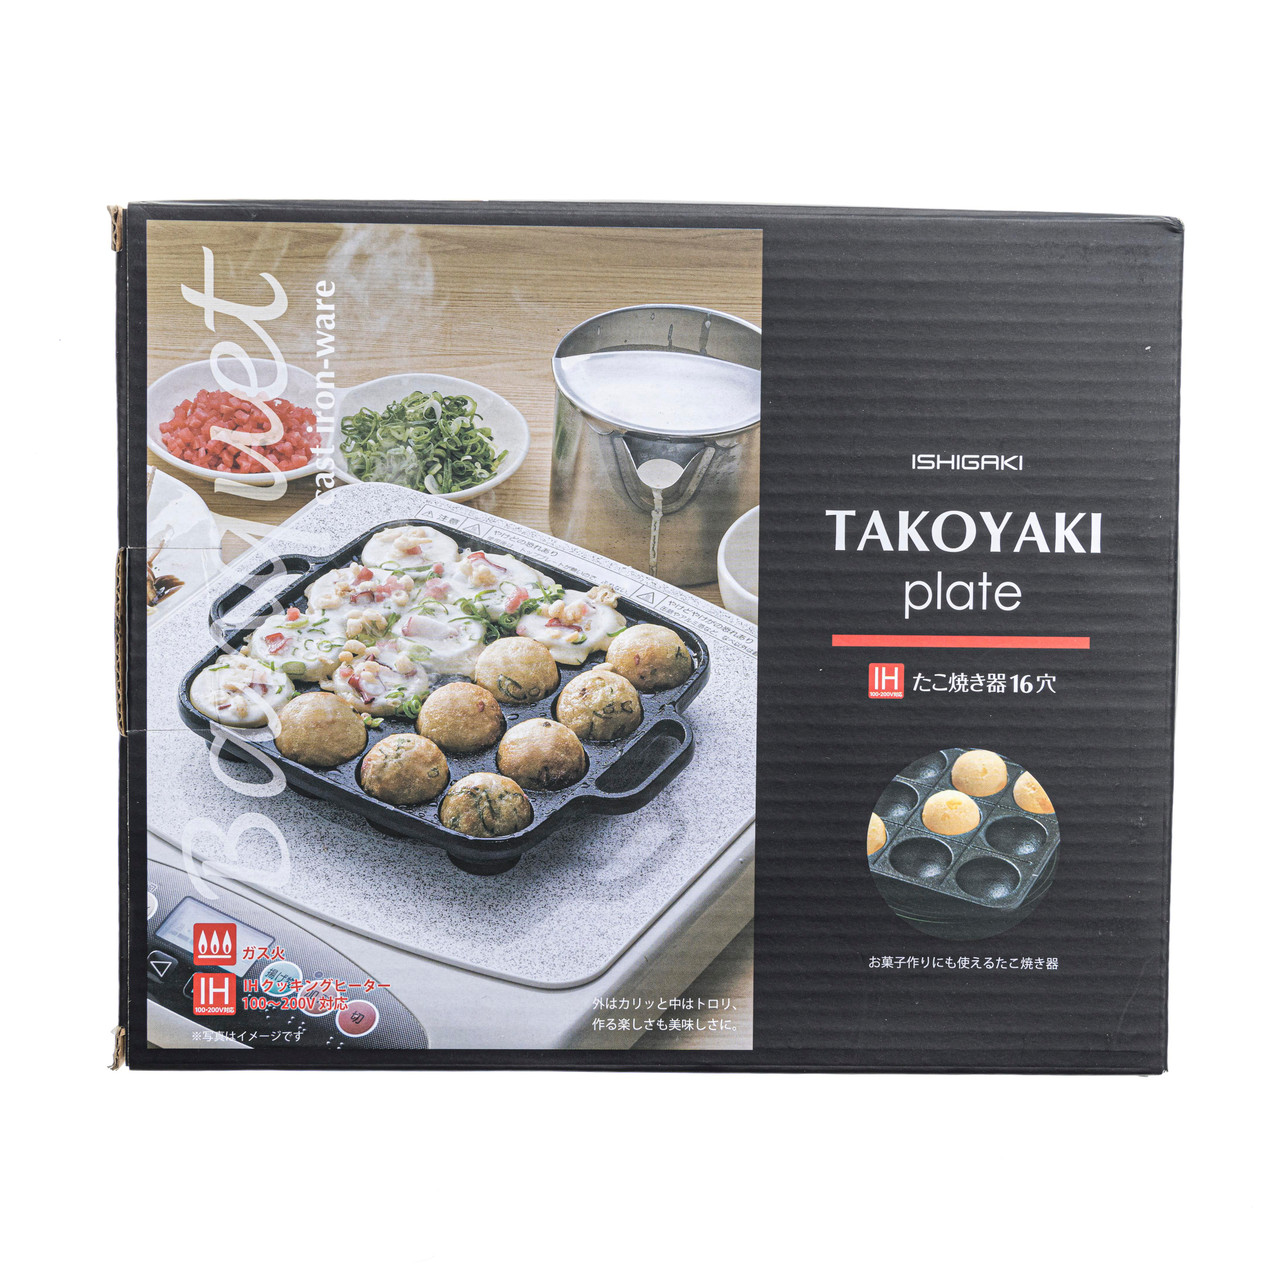 Plaque à Takoyaki en Fonte 16P ISHIGAKI